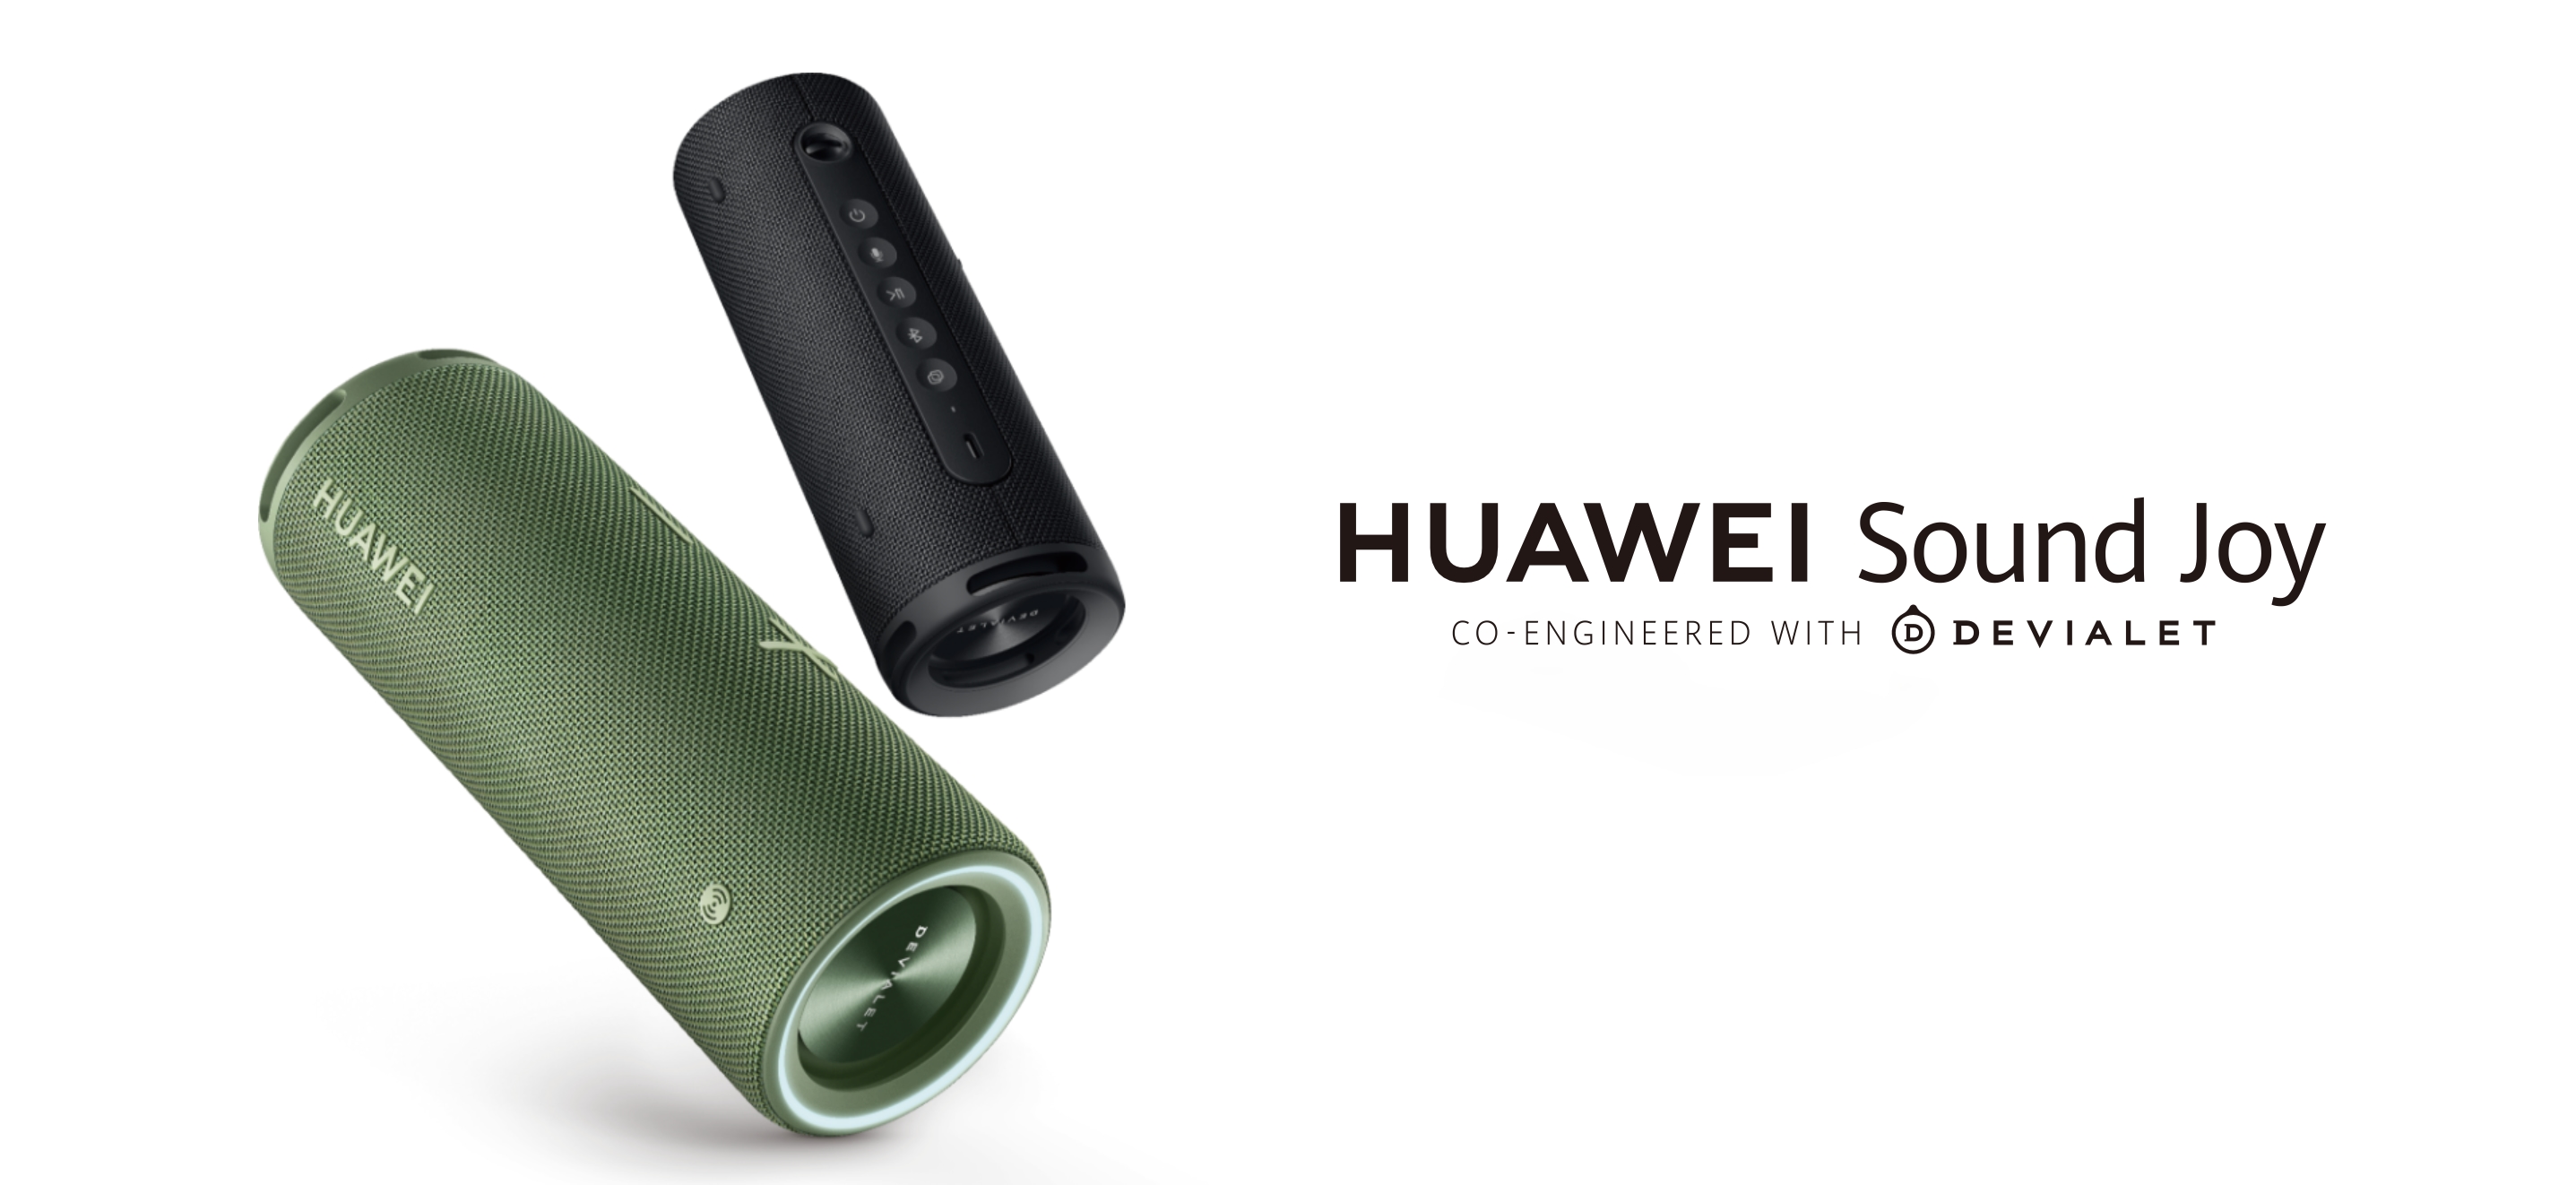 Huawei Sound Joy: bezprzewodowy głośnik z czterema głośnikami, ochroną IP67 i szybkim ładowaniem 40W za 149€